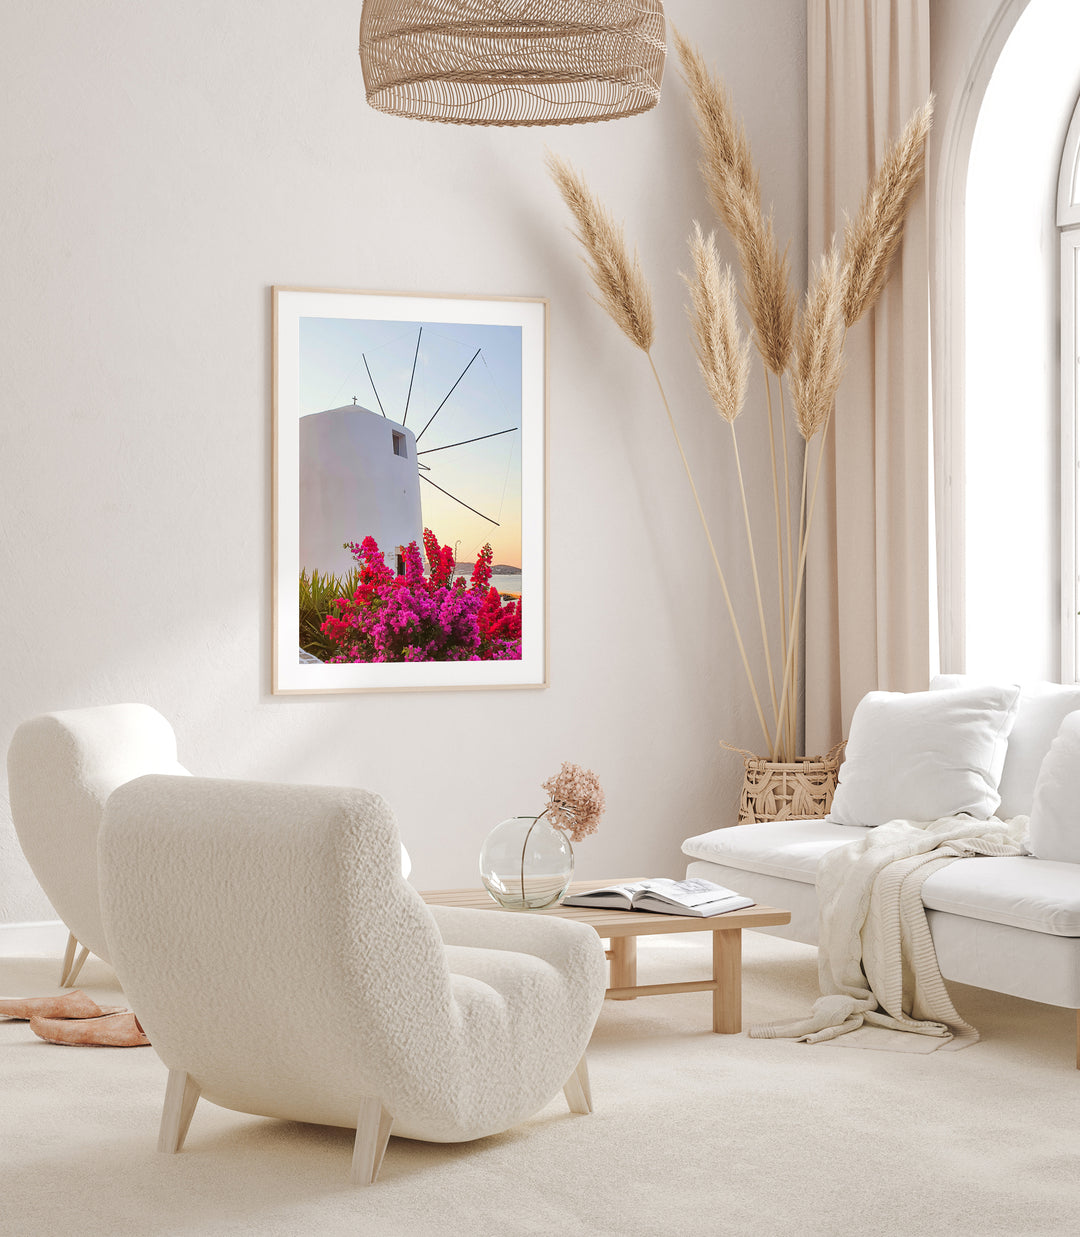 Griechische Windmühle III | Fine Art Print